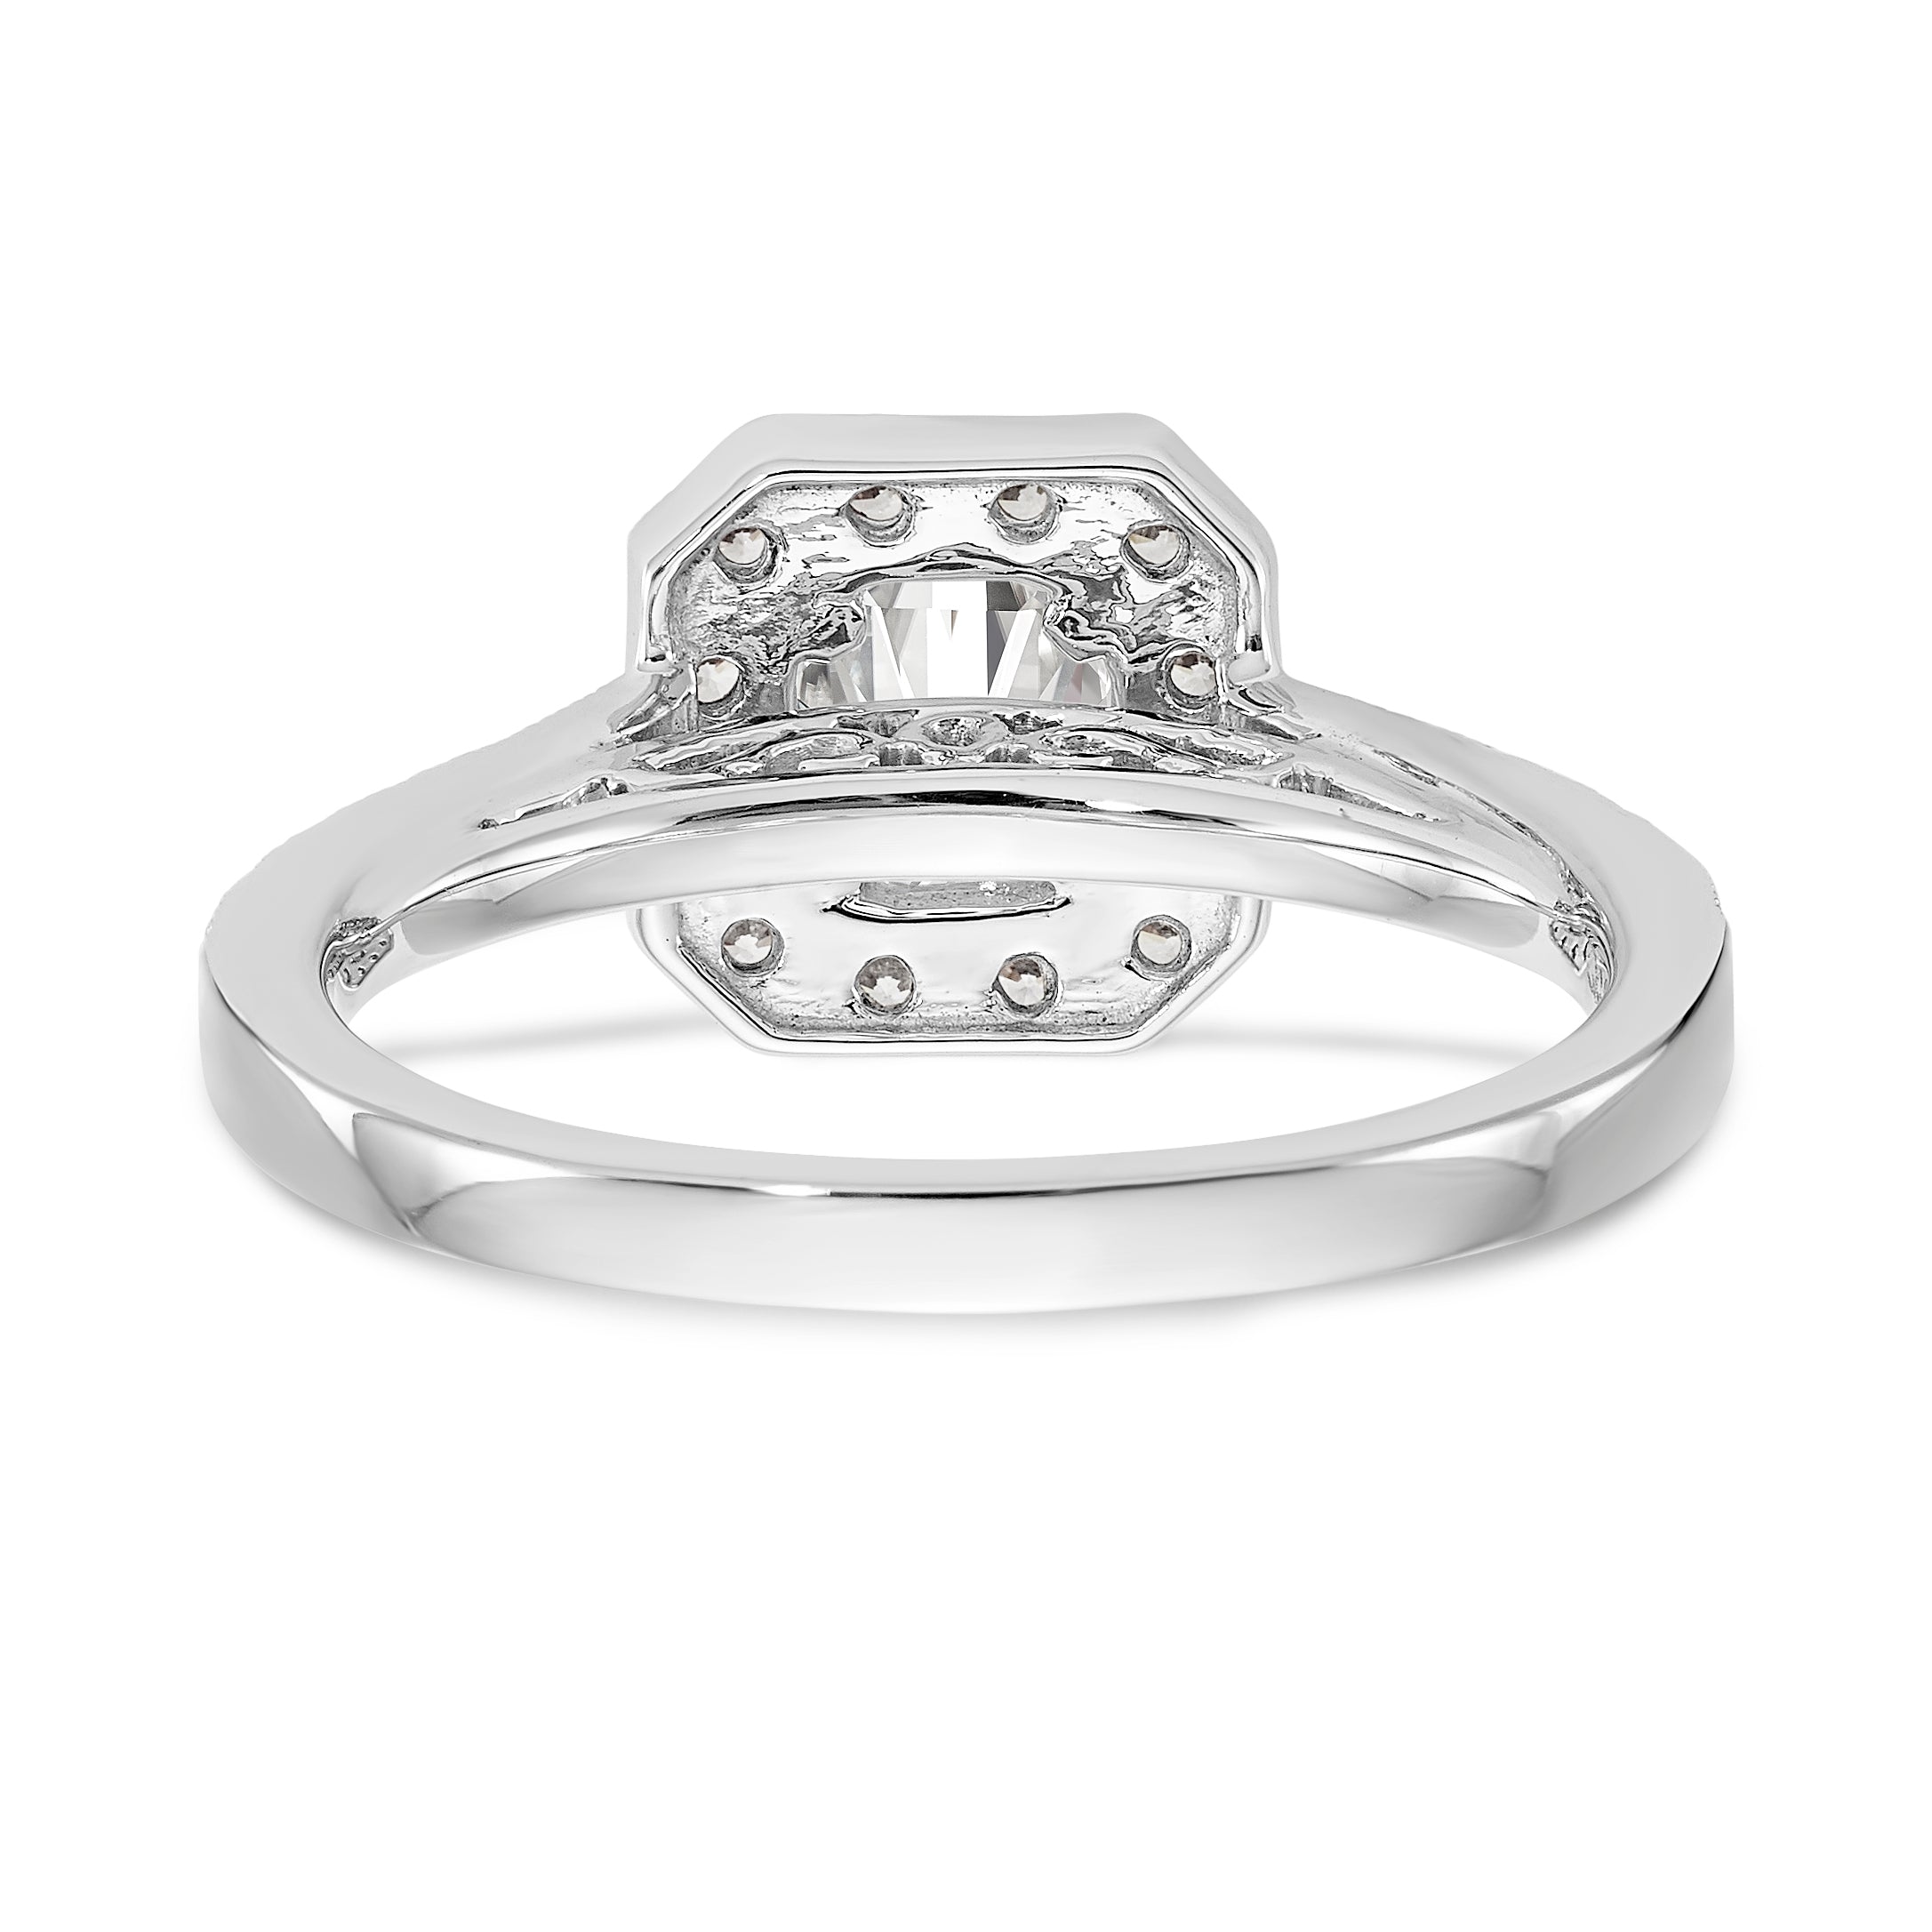 14K Two-tone Round Diamond Semi-Mount Cushion Halo Engagement Ring